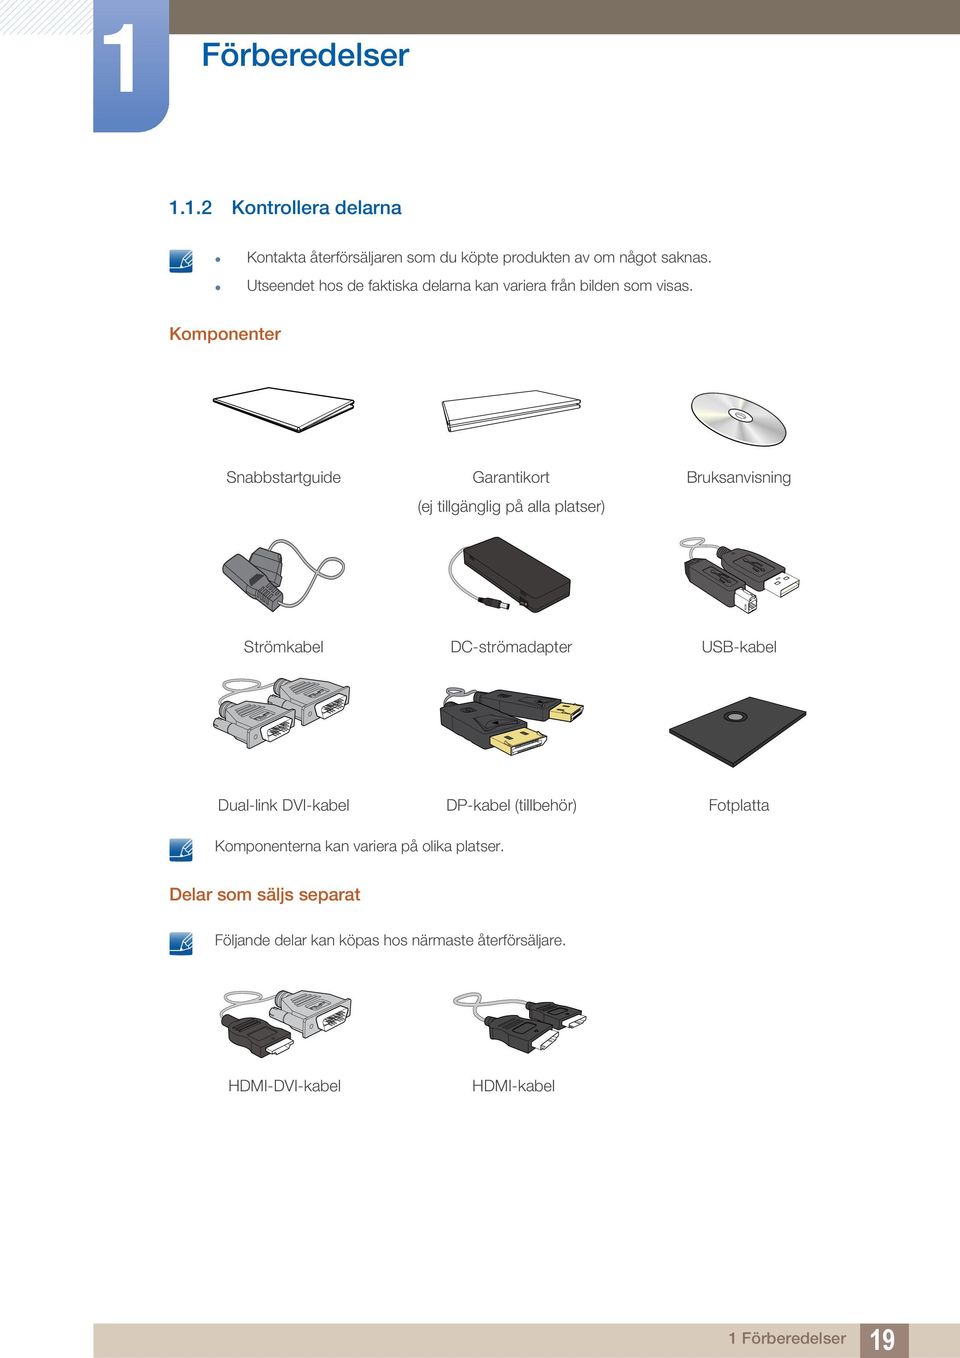 Komponenter Snabbstartguide Garantikort (ej tillgänglig på alla platser) Bruksanvisning Strömkabel DC-strömadapter USB-kabel